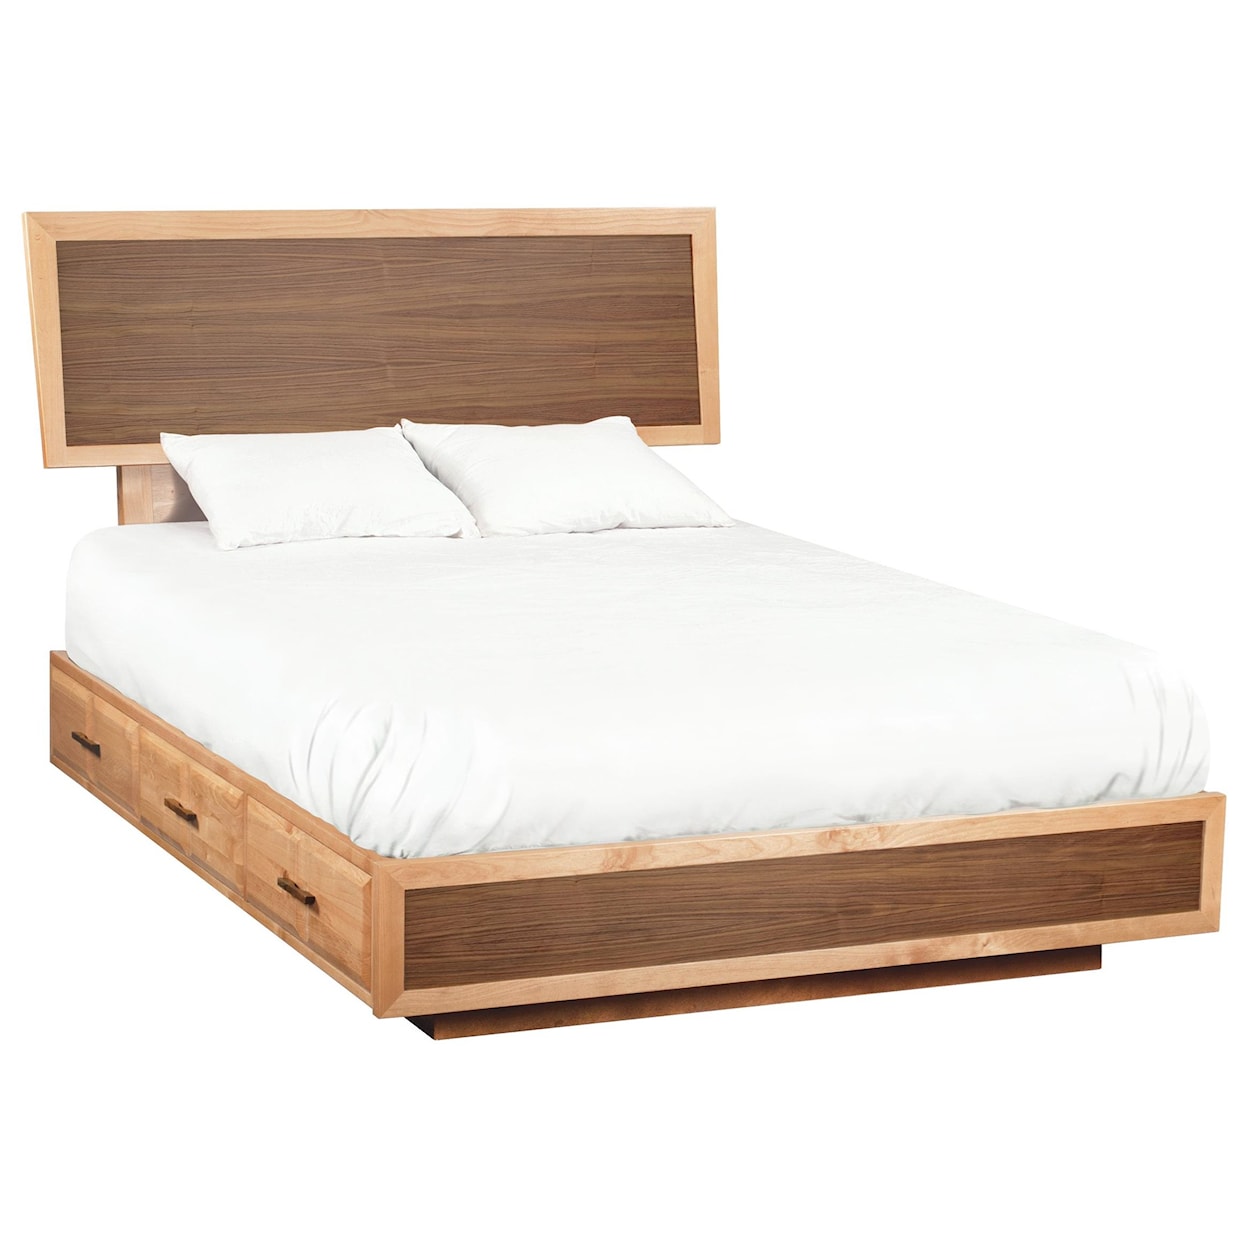 Whittier Wood Addison Queen Adjustable Headboard Storage Bed